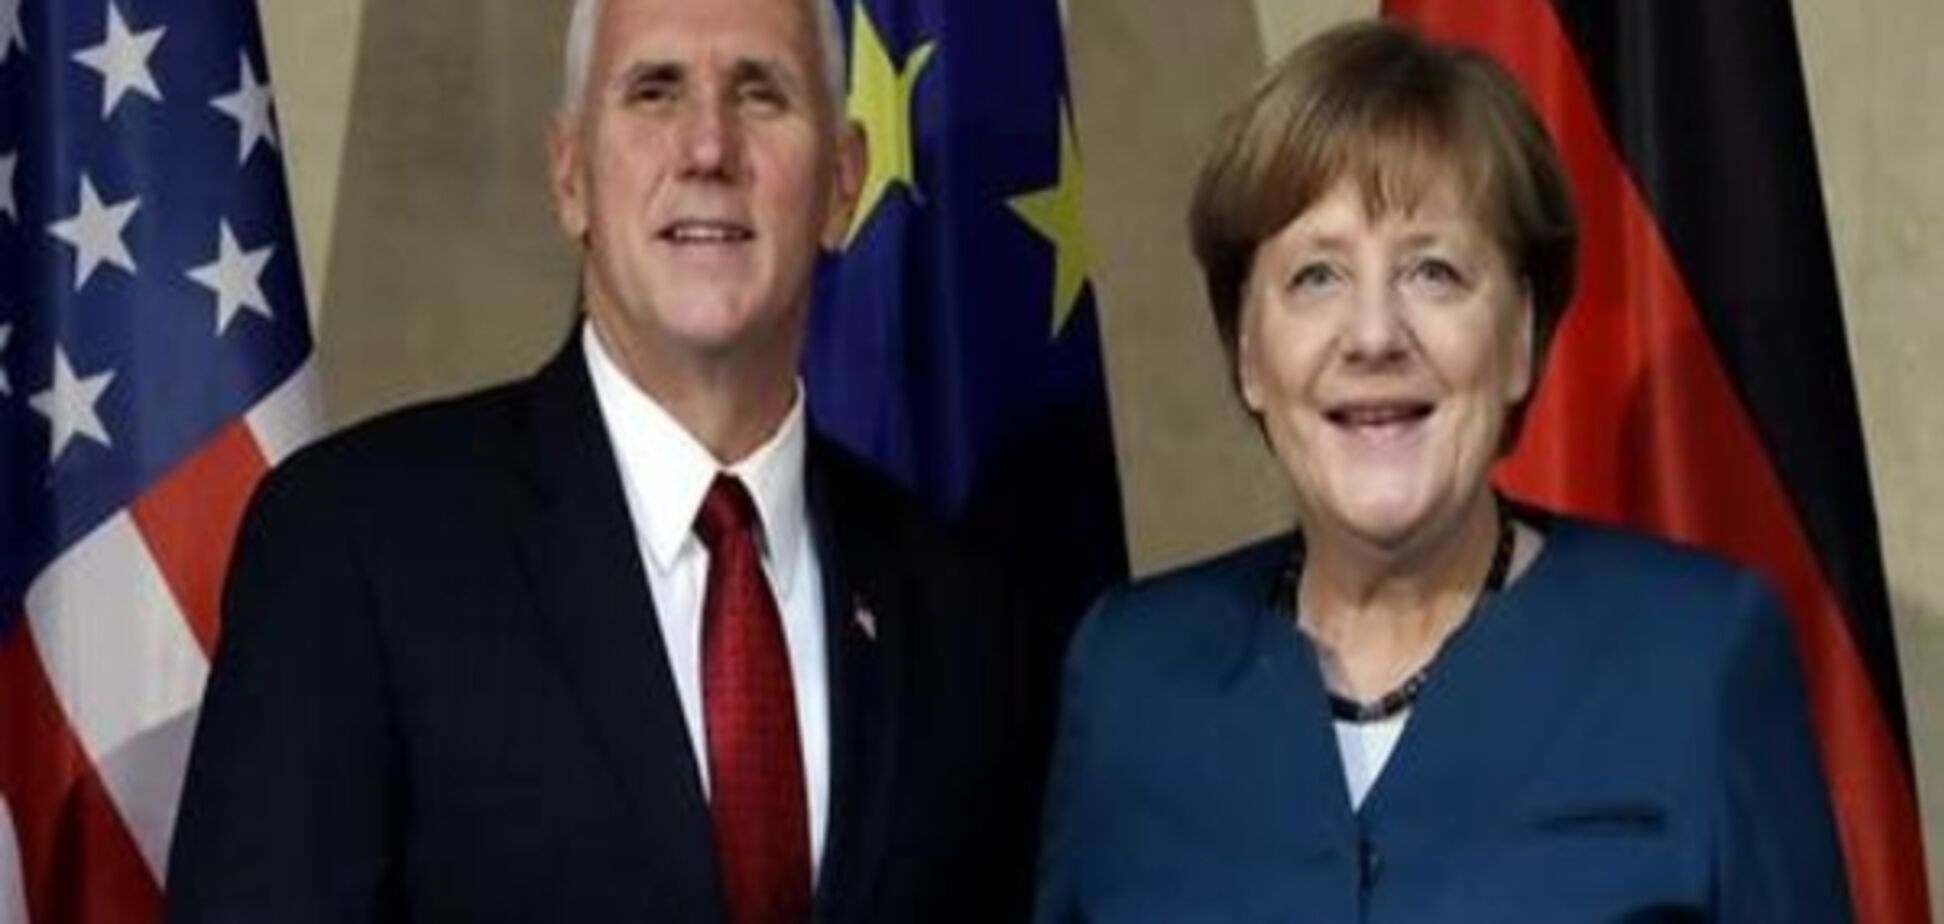 Меркель обговорила з Пенсом конфлікти в Україні та Сирії